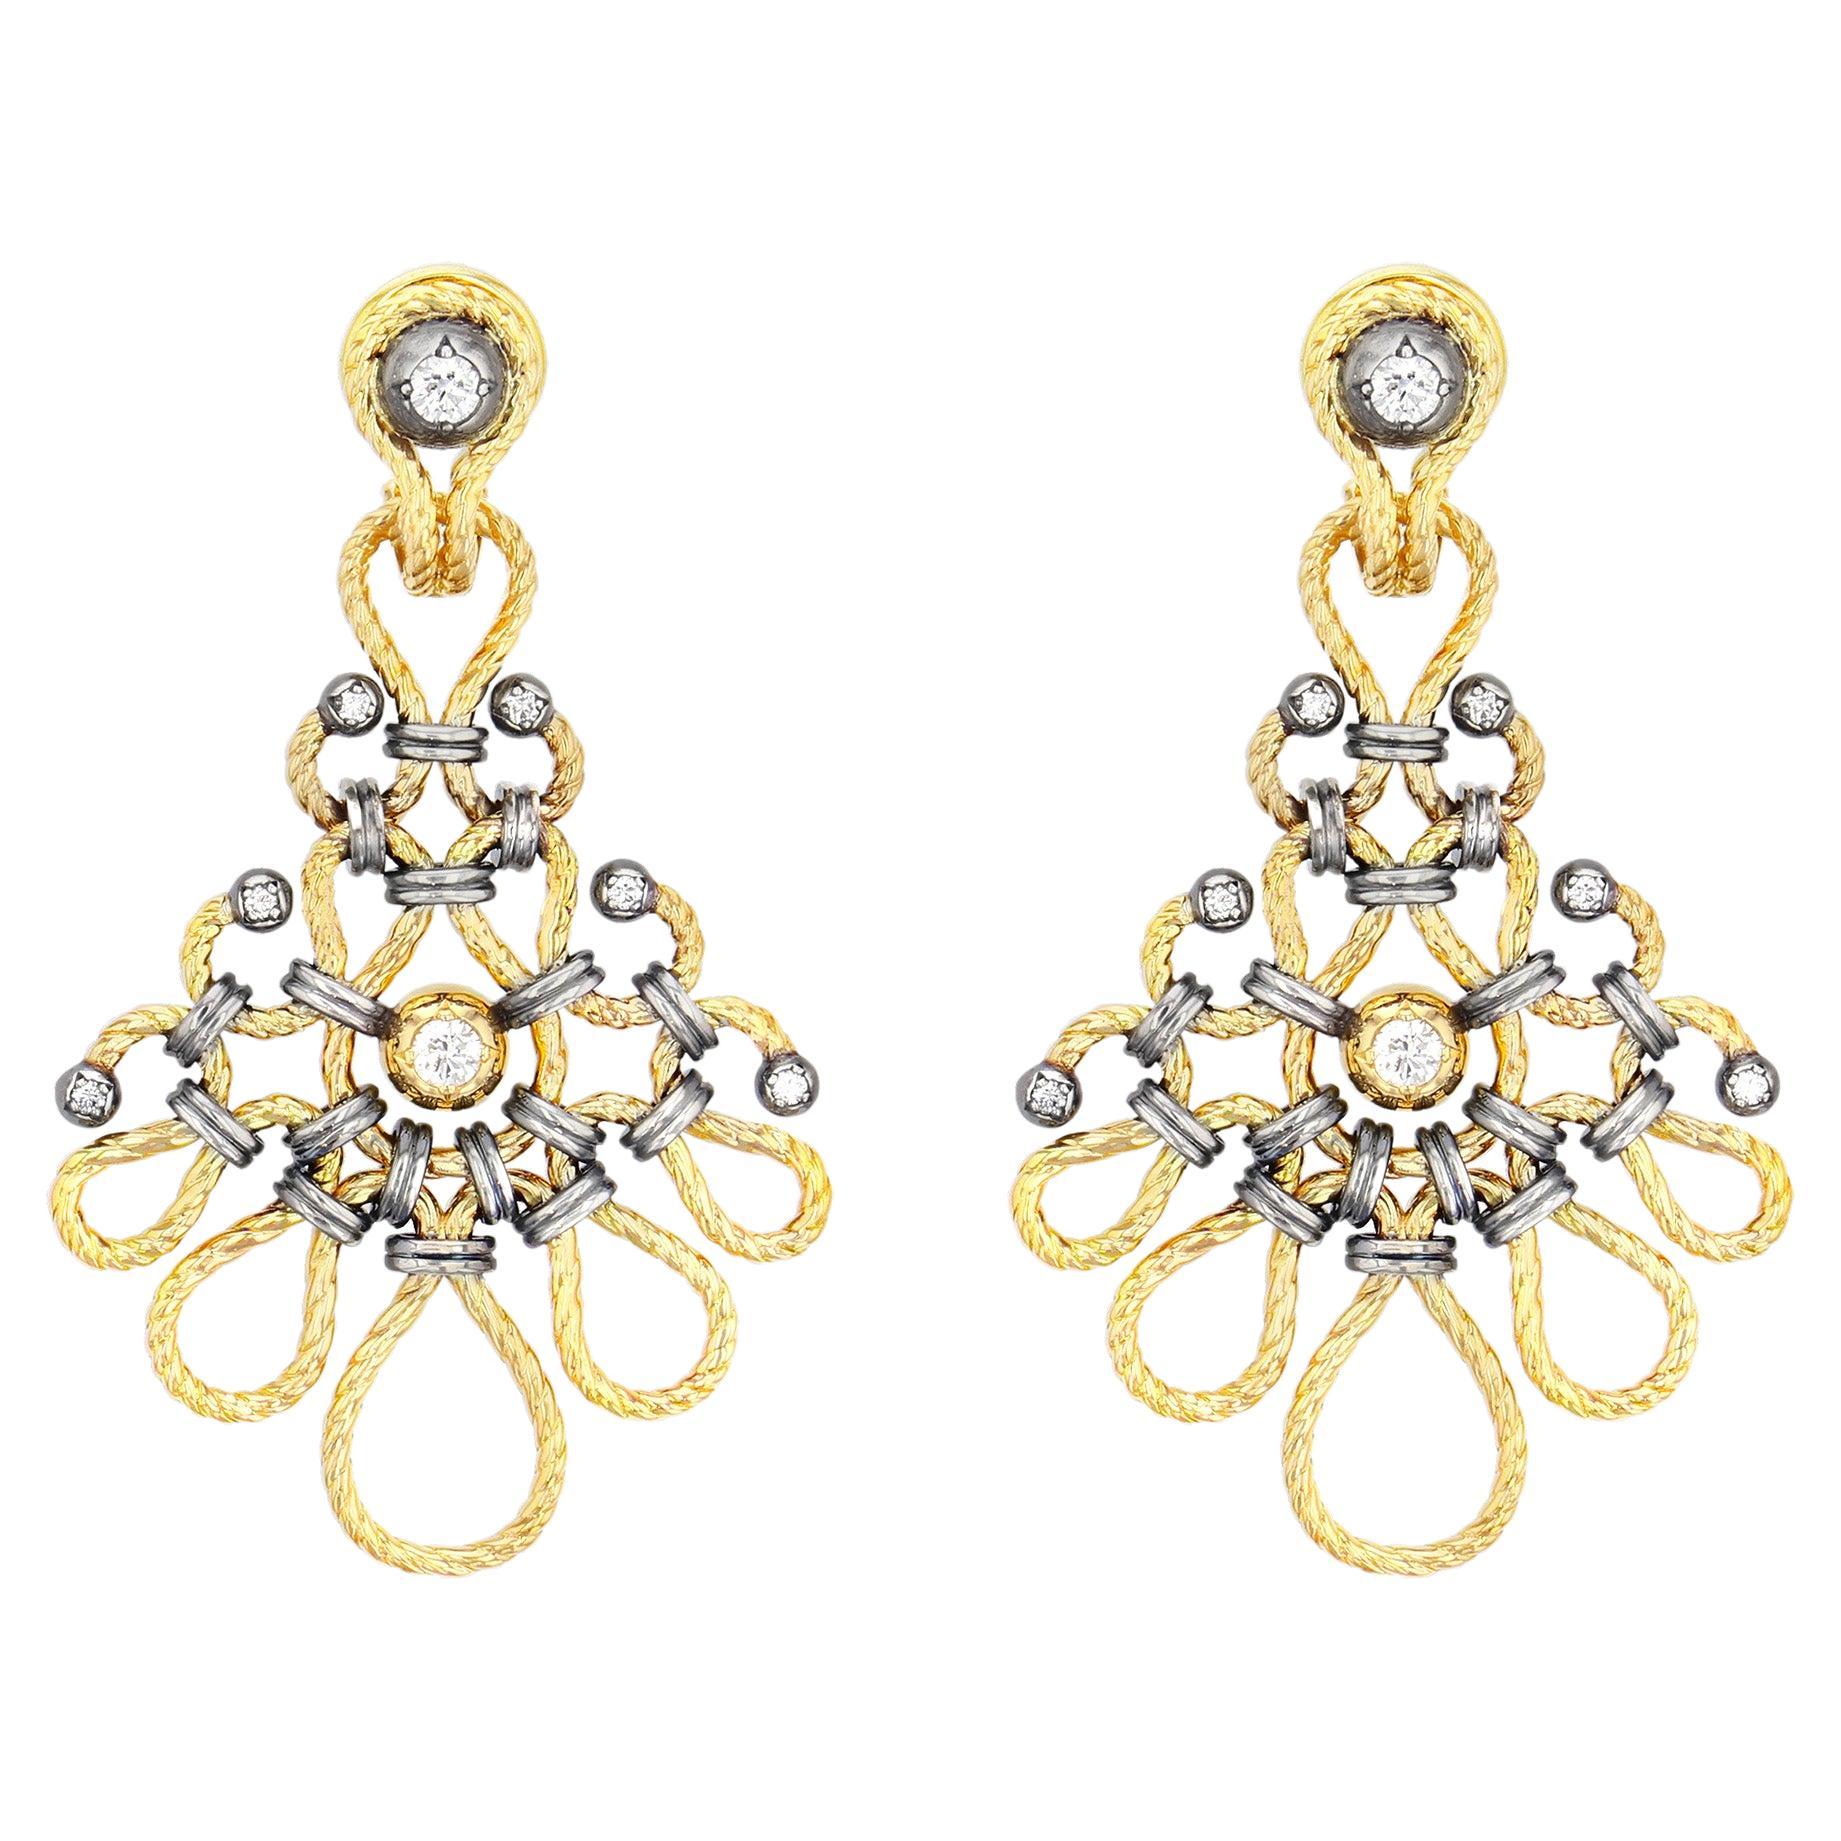 Diamond & Gold Twist Earrings by Elie Top For Sale